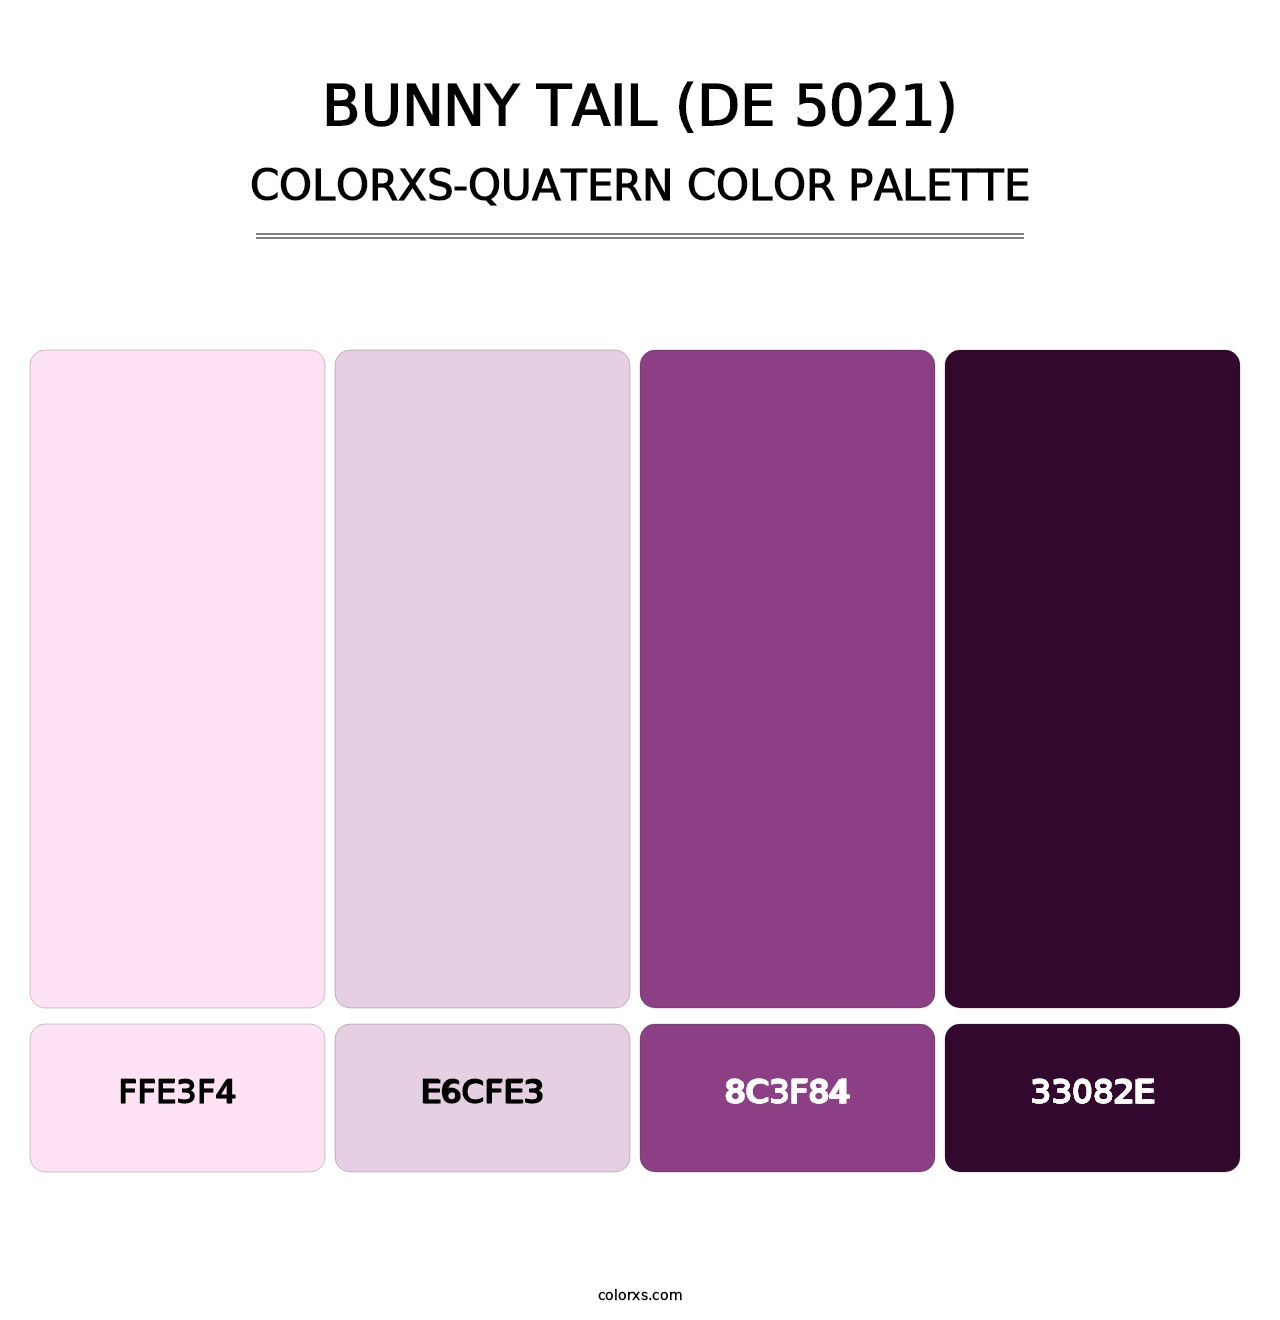 Bunny Tail (DE 5021) - Colorxs Quatern Palette